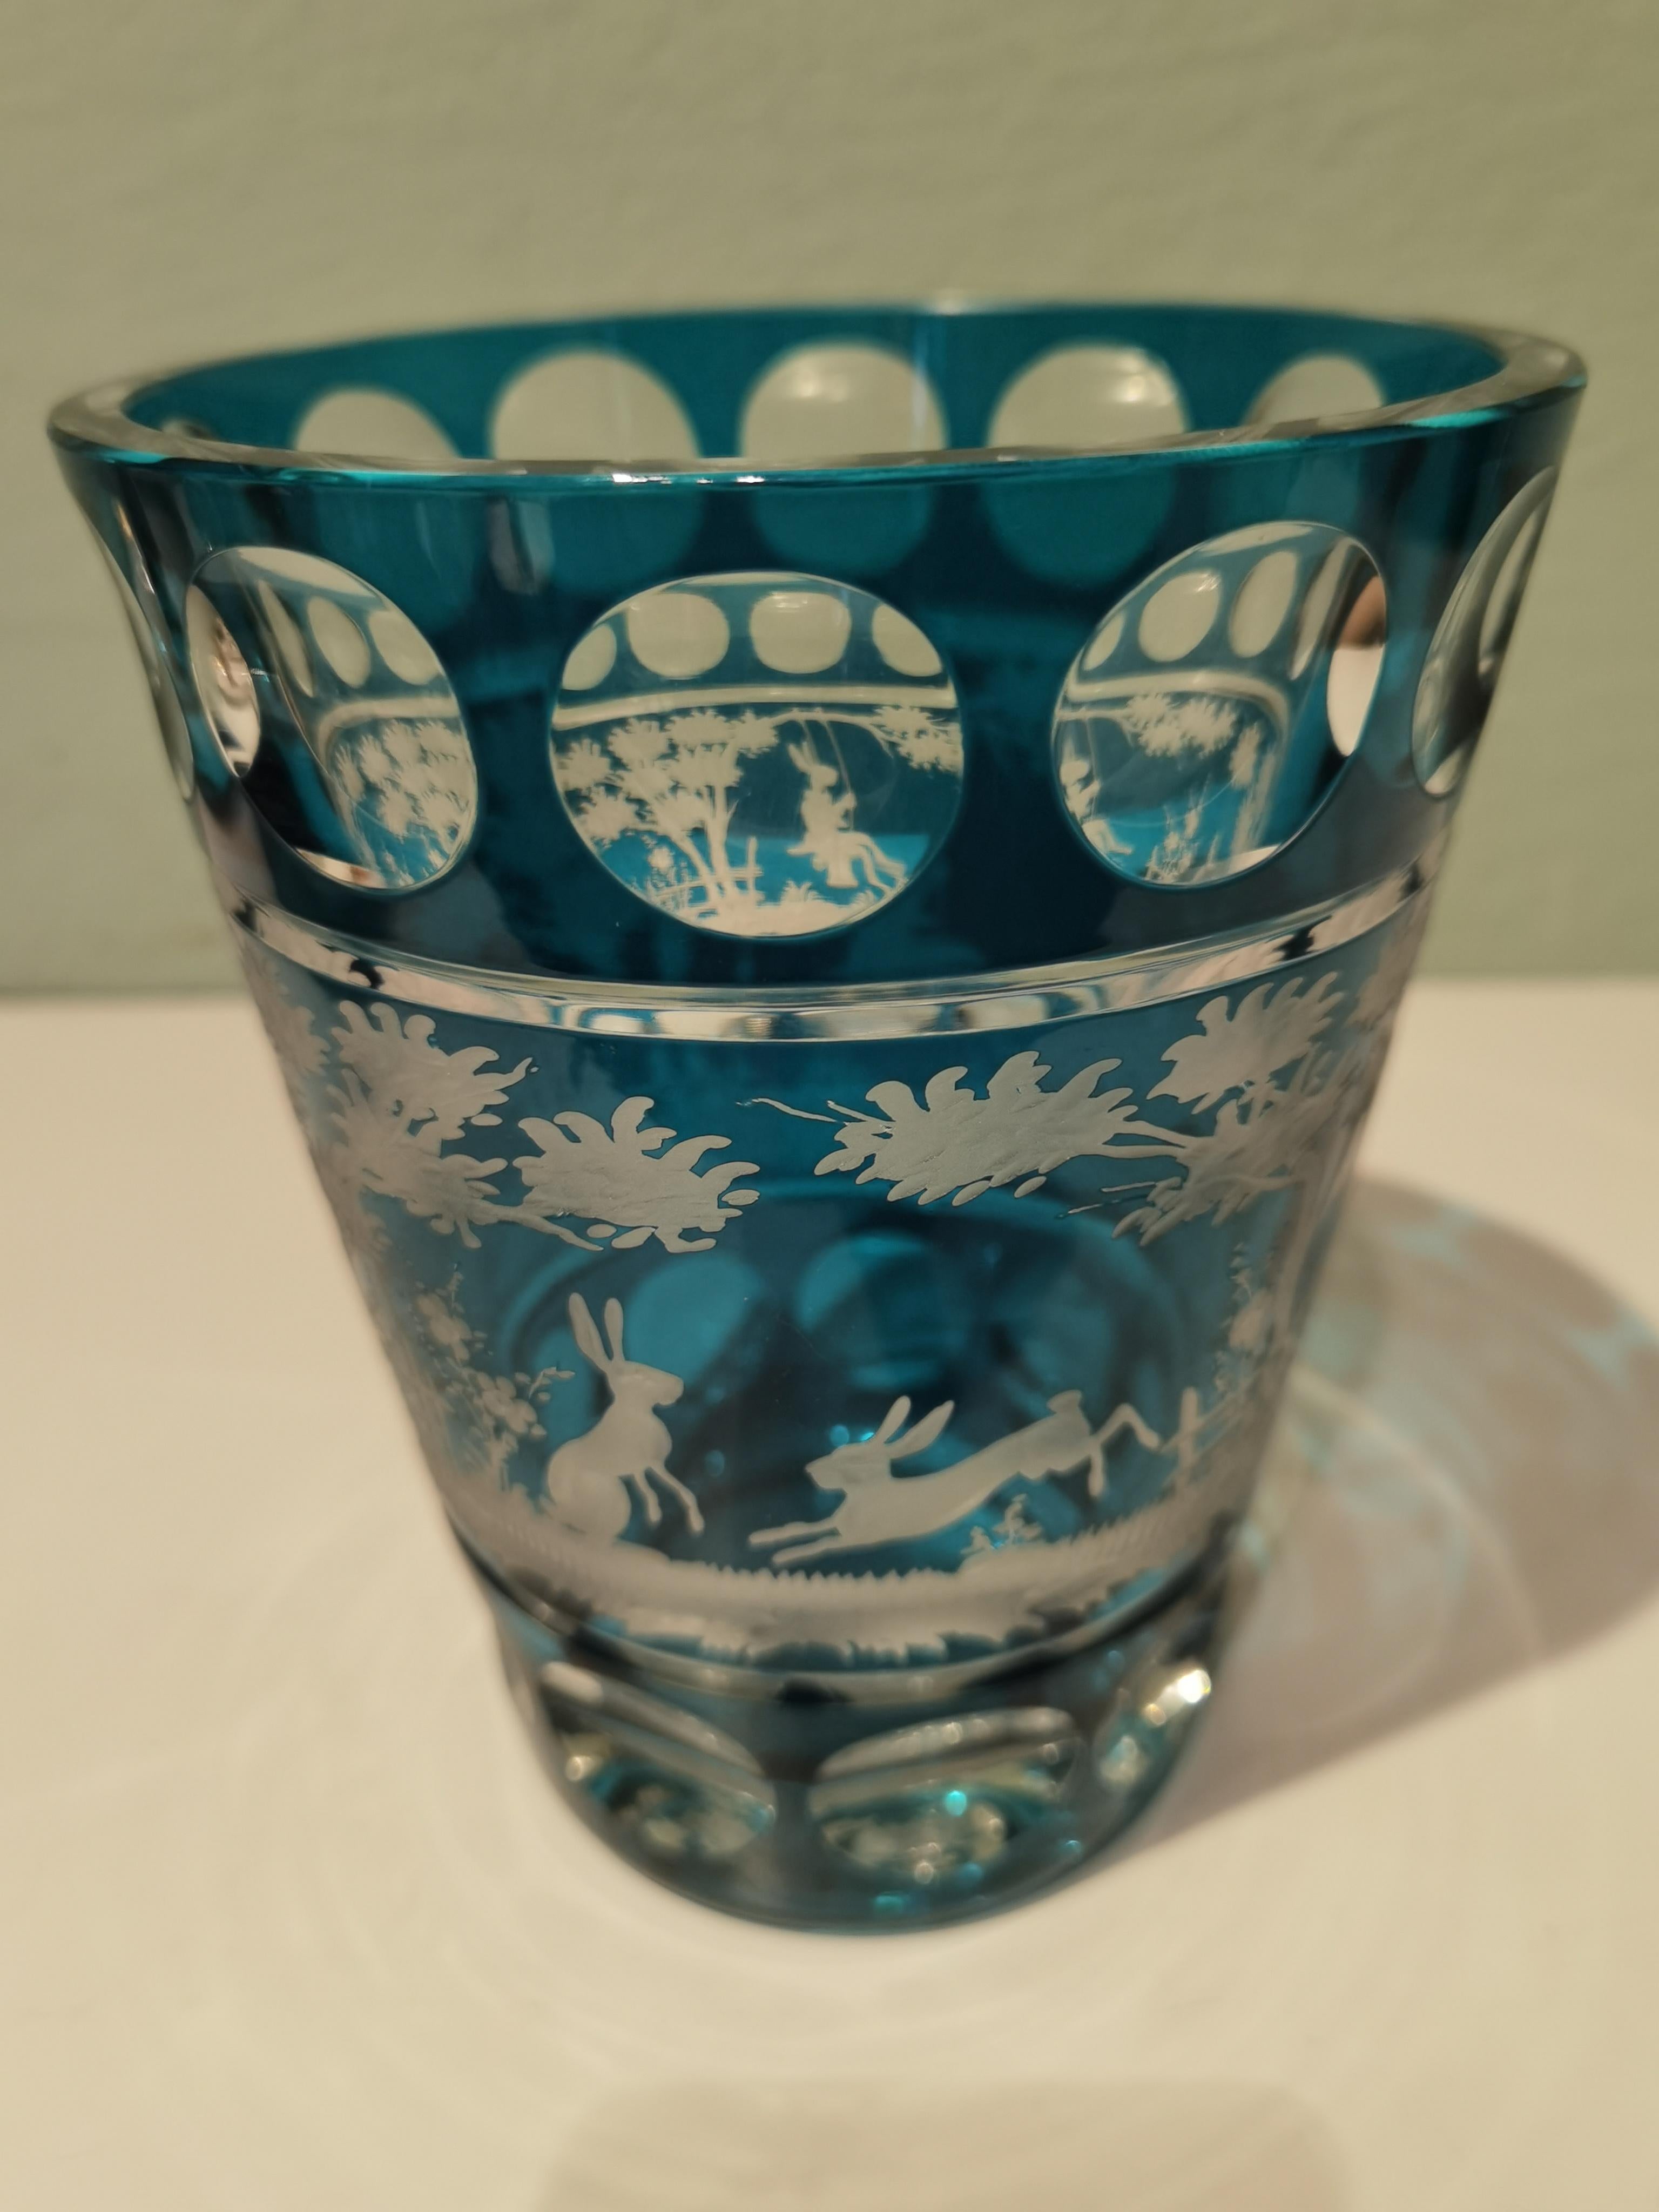 Vase en cristal soufflé à la main en verre bleu pétrole avec un décor de style champêtre tout autour. Les feuilles, le lapin et les cerfs sont gravés à la main par des artistes verriers en Bavière/Allemagne. Le verre présenté ici est de couleur